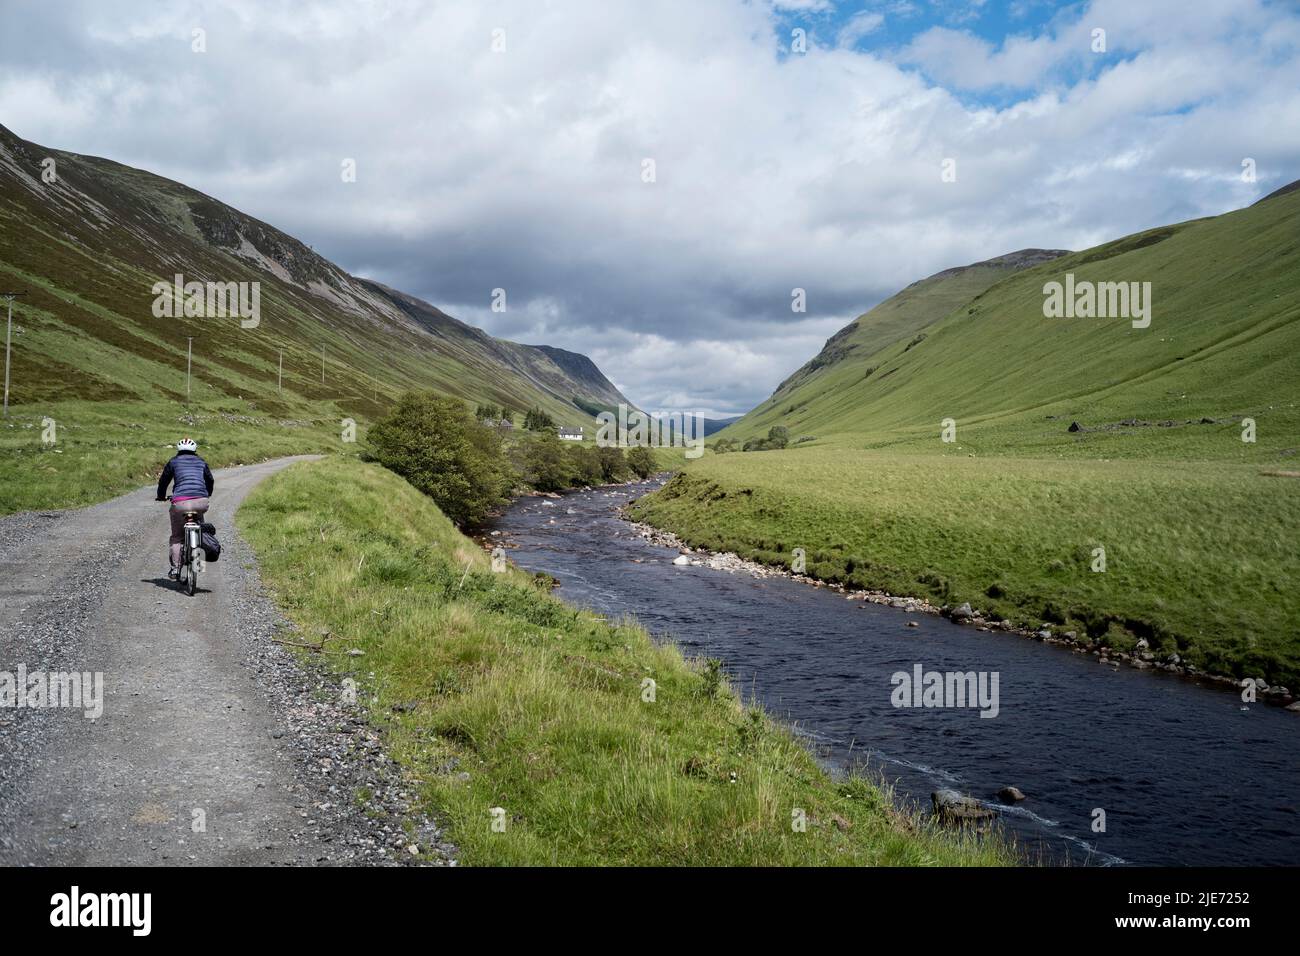 Ciclista en una pista en Glen Tilt, junto a la inclinación del río, cerca de Blair Atholl Perthshire, Escocia. Foto de stock